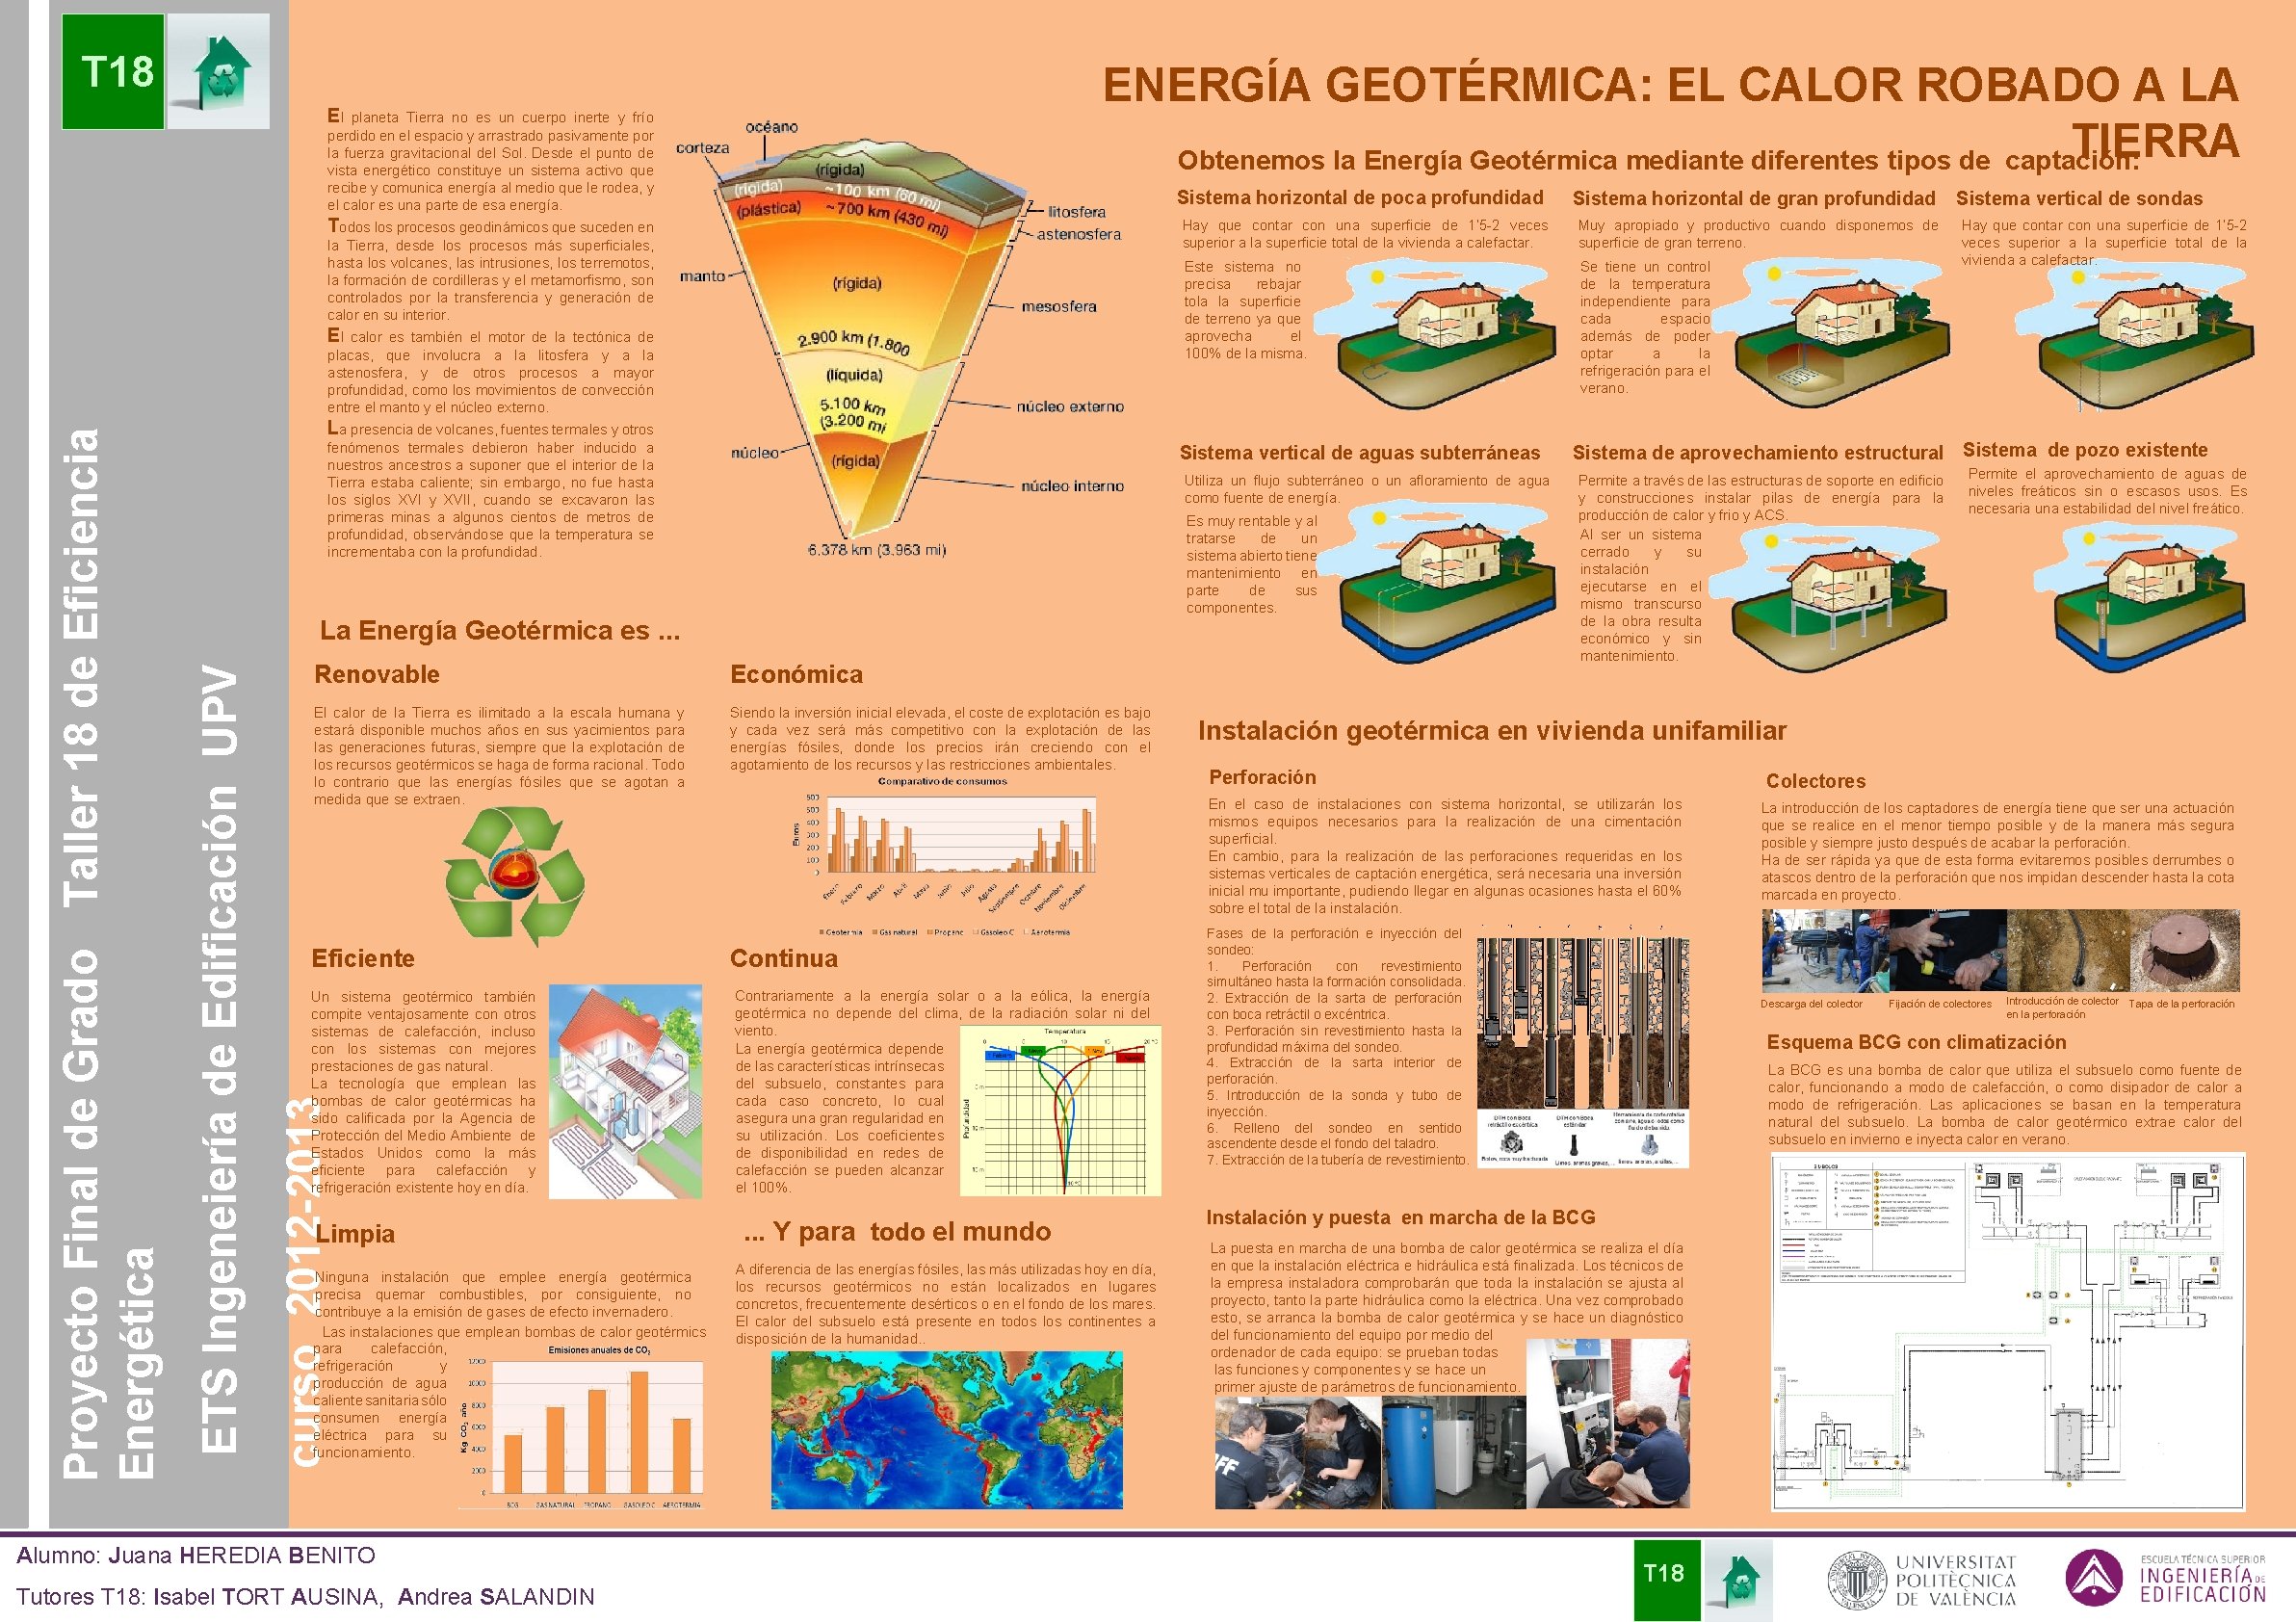 T 18 ENERGÍA GEOTÉRMICA: EL CALOR ROBADO A LA TIERRA Obtenemos la Energía Geotérmica